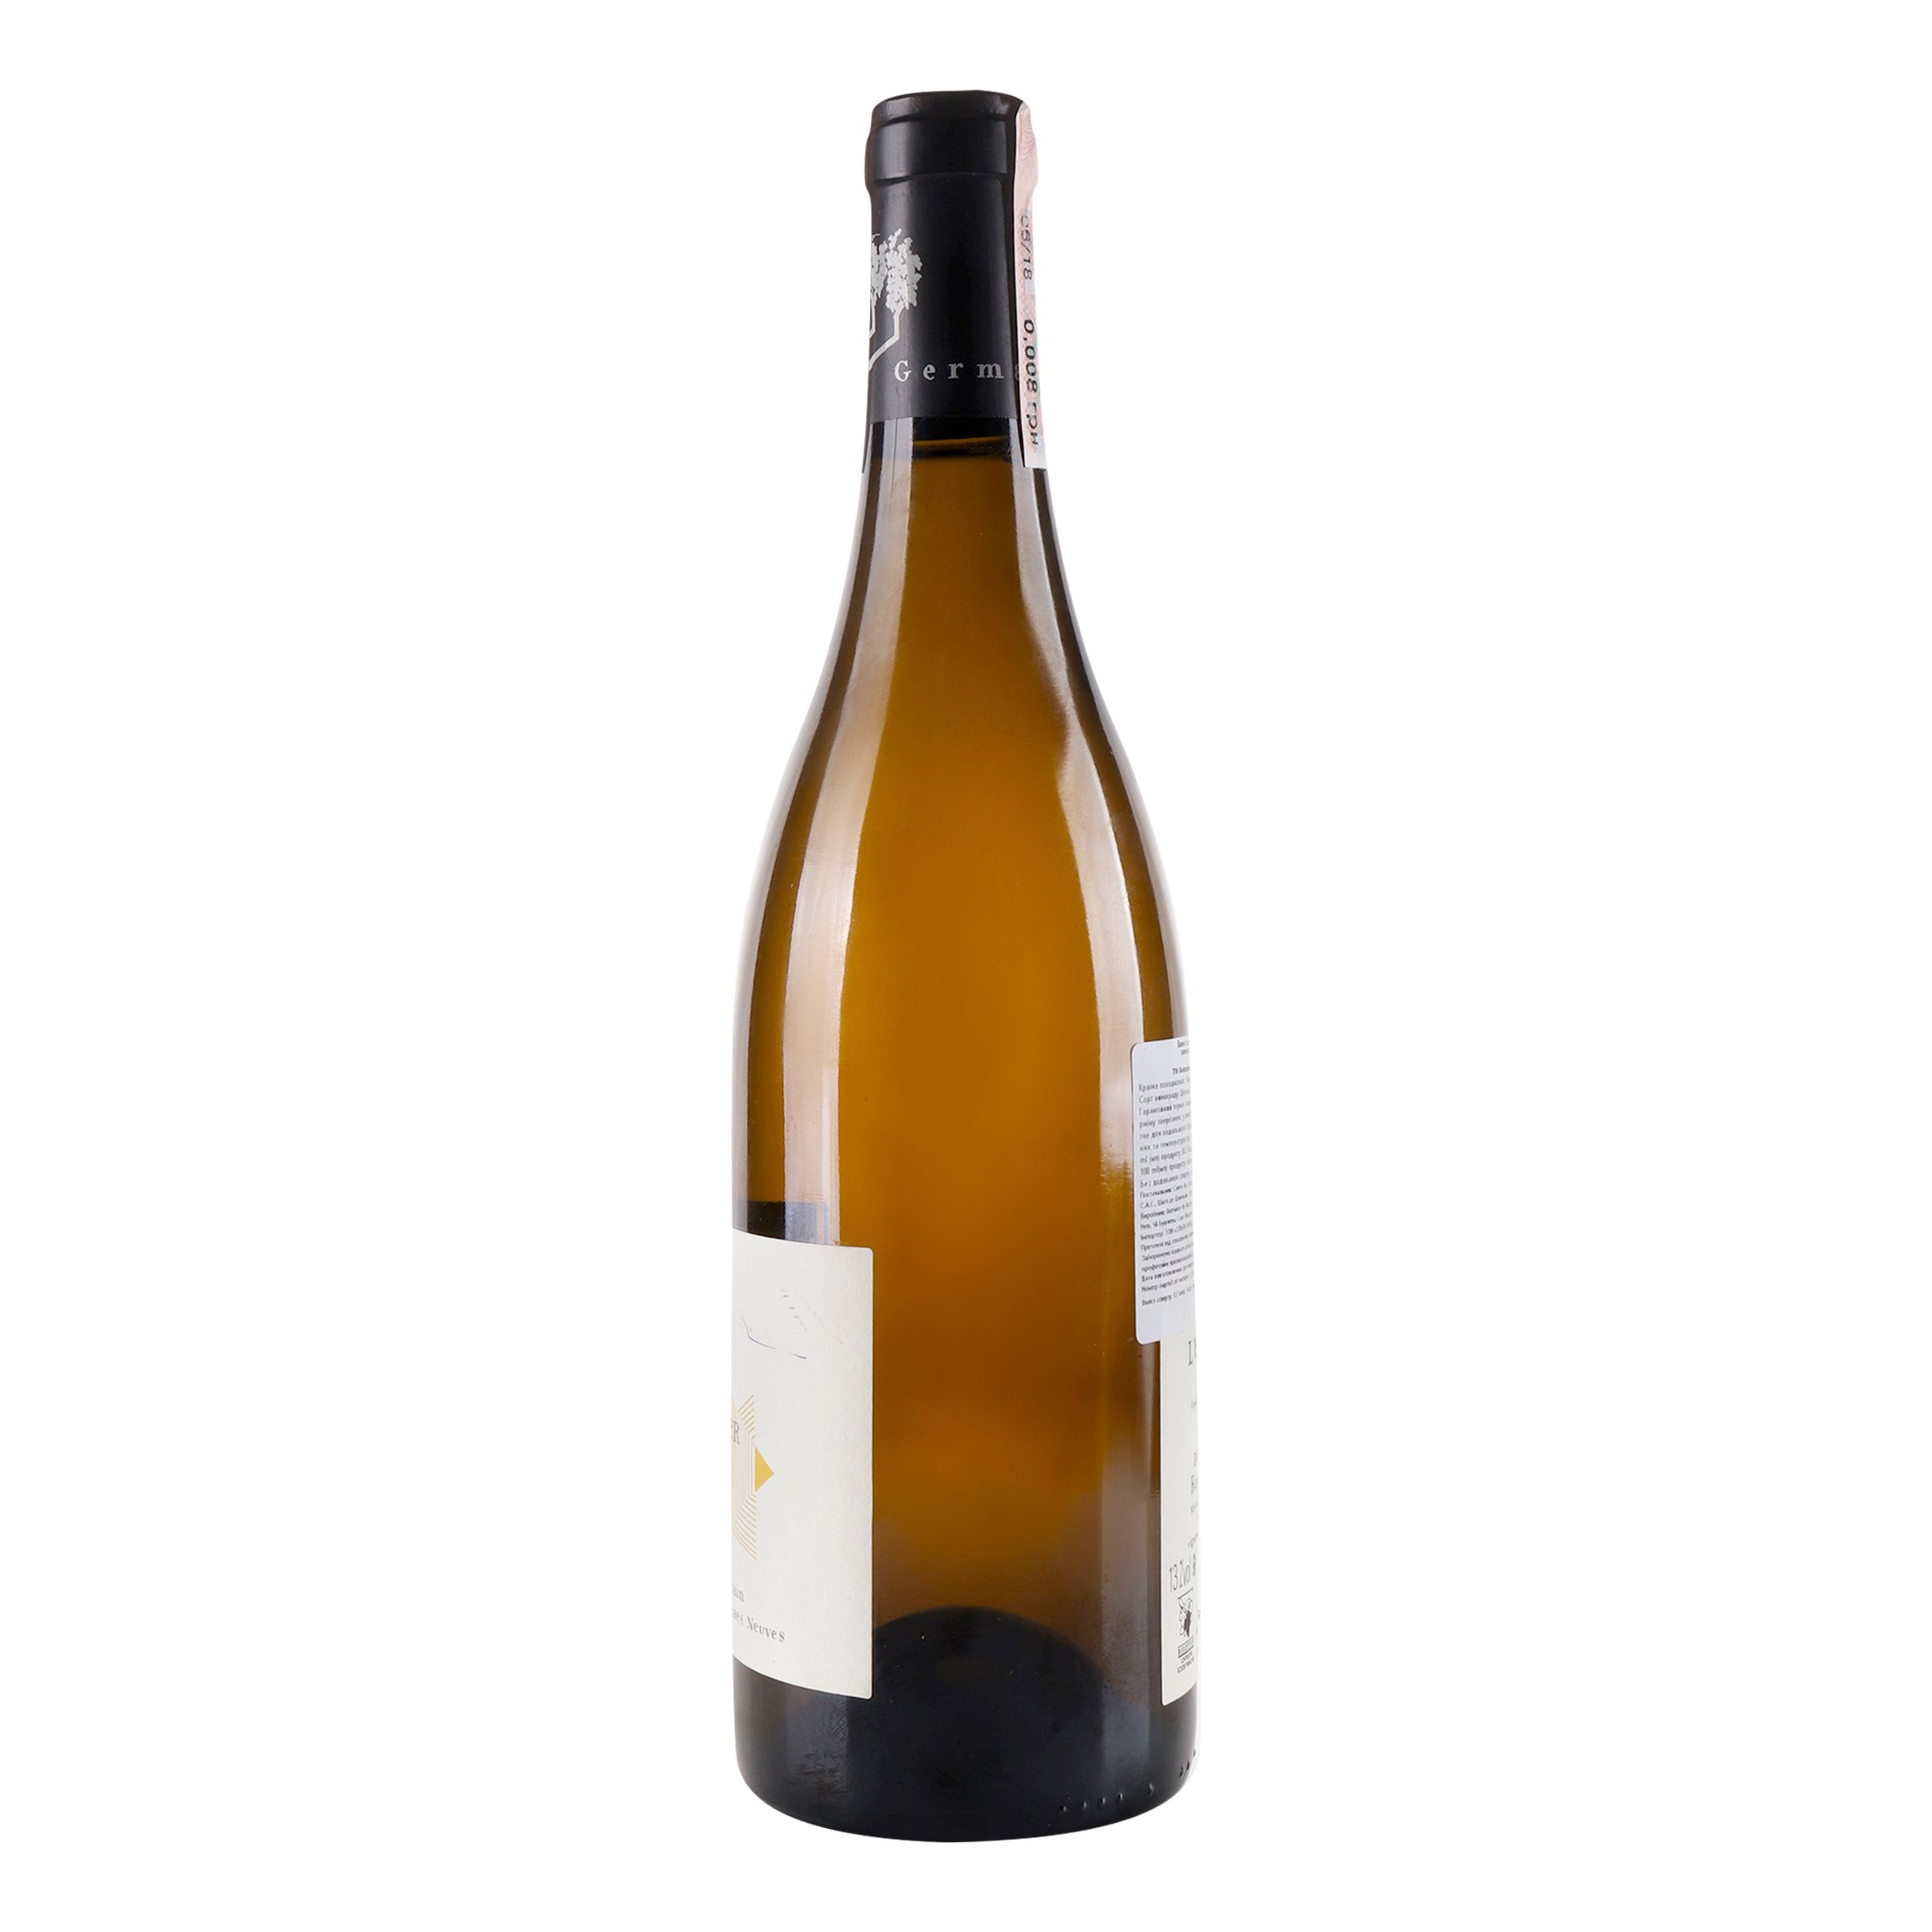 Вино Thierry Germain Domaine de Roches Neuves Saumur L’Echelier 2017 АОС/AOP, 13%, 0,75 л (766677) - фото 2